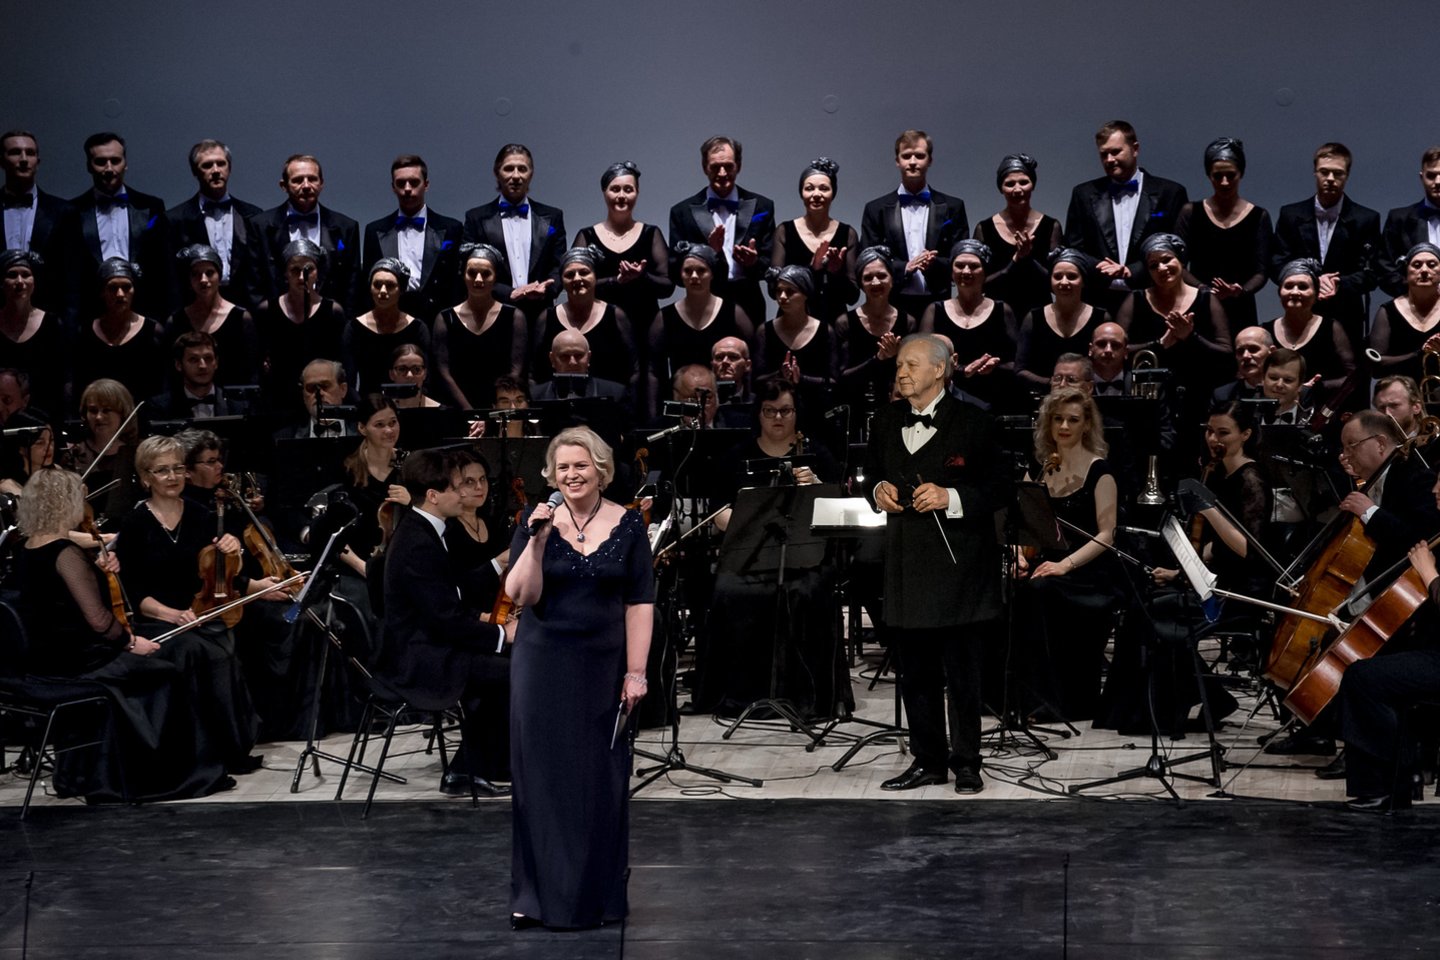 Klaipėdos scenoje S.Domarkas dirigavo jubiliejinį koncertą "Operetės šventė".<br> O.Kasabovos nuotr.